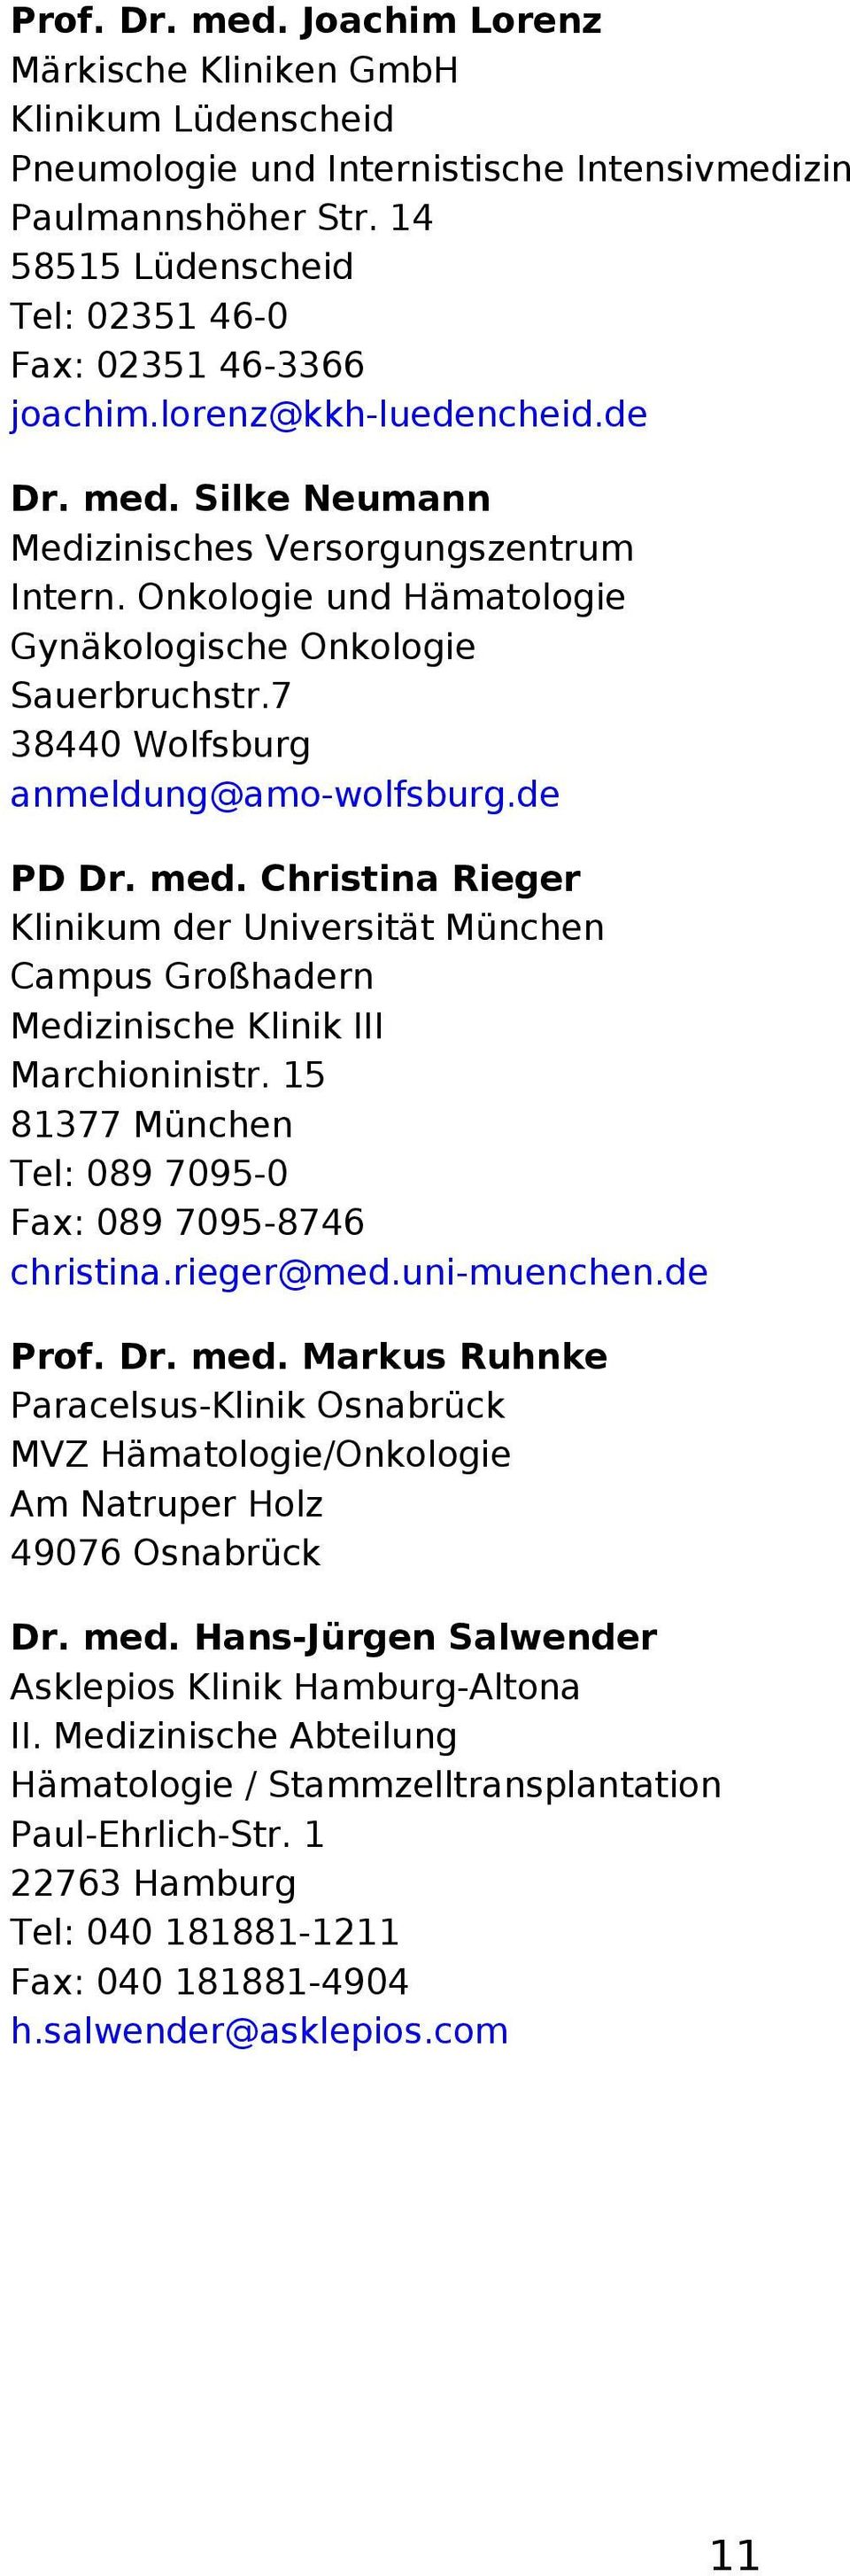 Onkologie und Hämatologie Gynäkologische Onkologie Sauerbruchstr.7 38440 Wolfsburg anmeldung@amo-wolfsburg.de PD Dr. med.